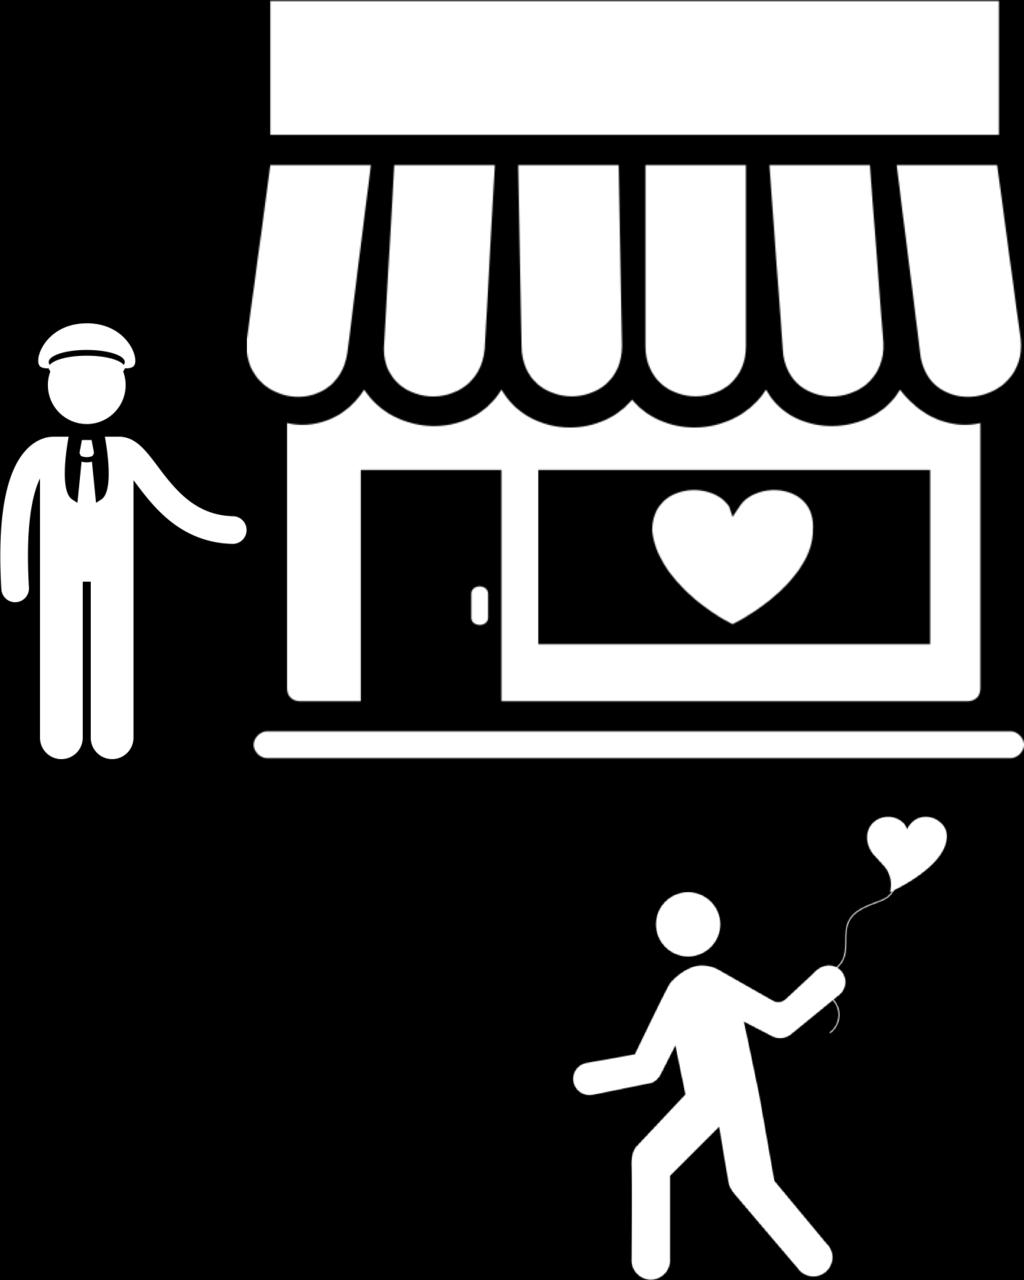 Çalışanların Sıcak Karşılama Oranları Mağaza çalışanlarının düzenli eğitimi ve motivasyonları, müşteri bağlılığını etkiliyor. ŞOK marketlerini ziyaret eden tüketicilerin 94.